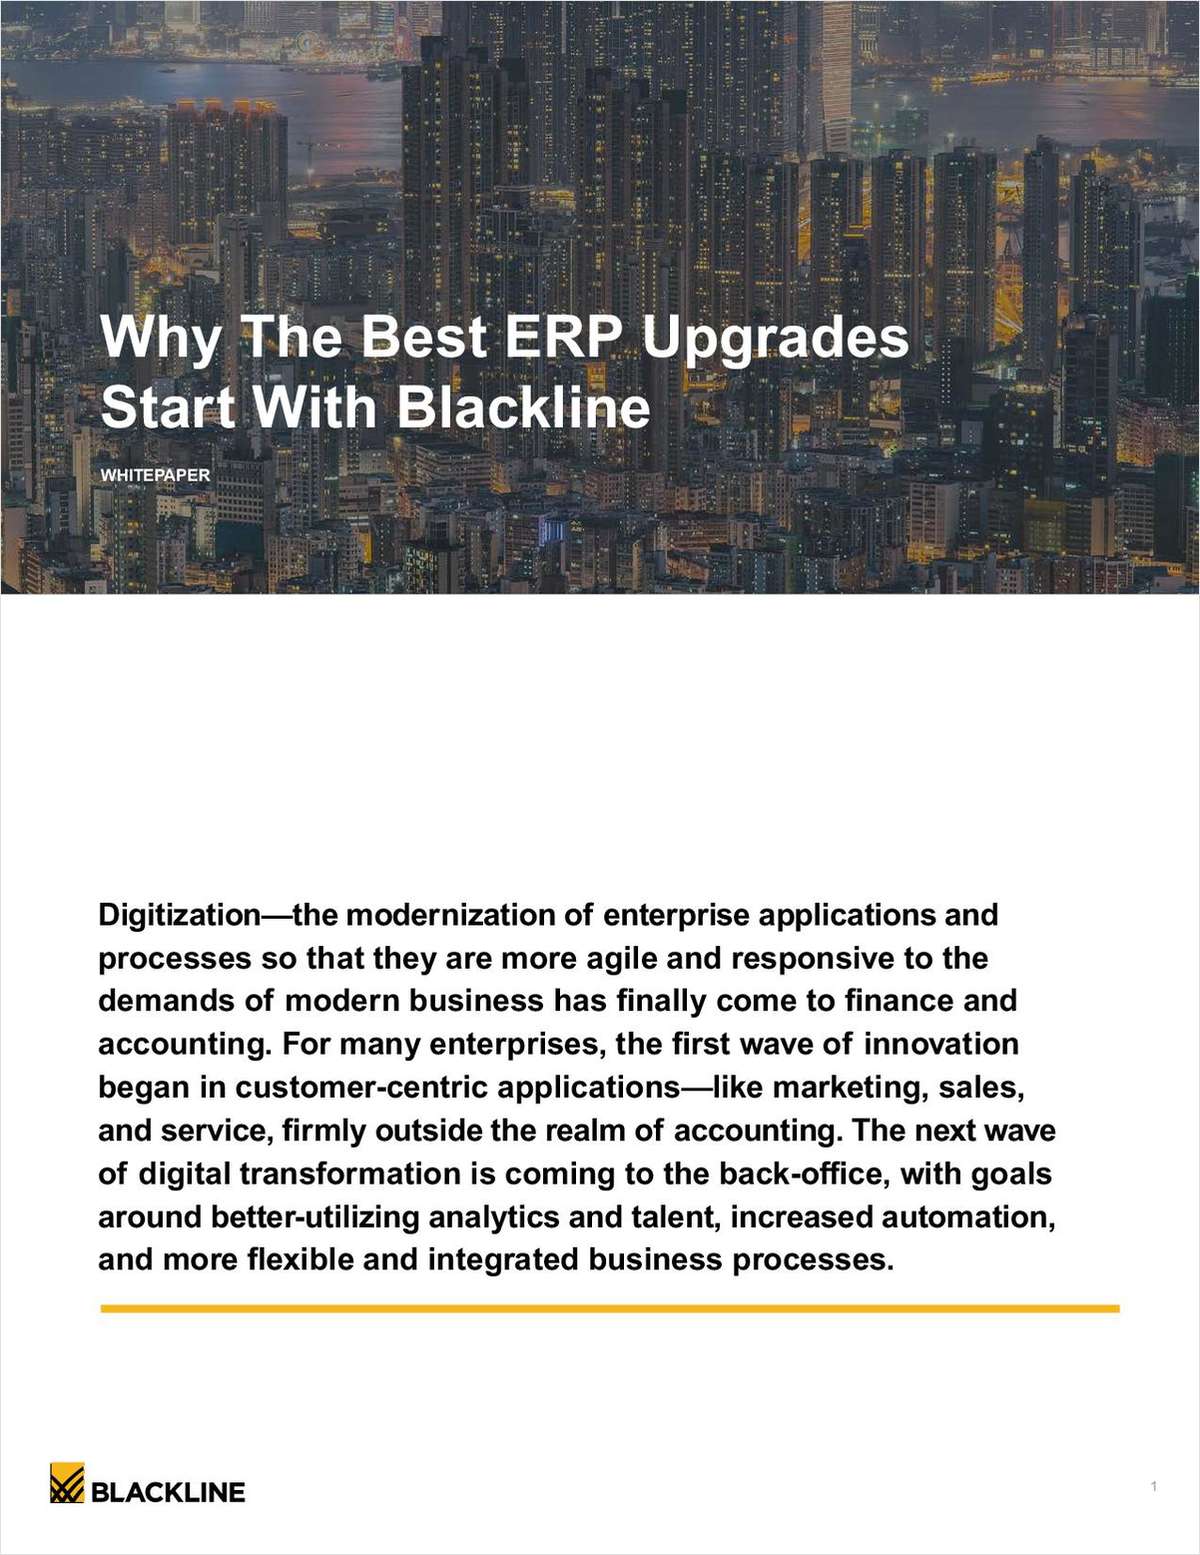 Why The Best ERP Upgrades Start with BlackLine